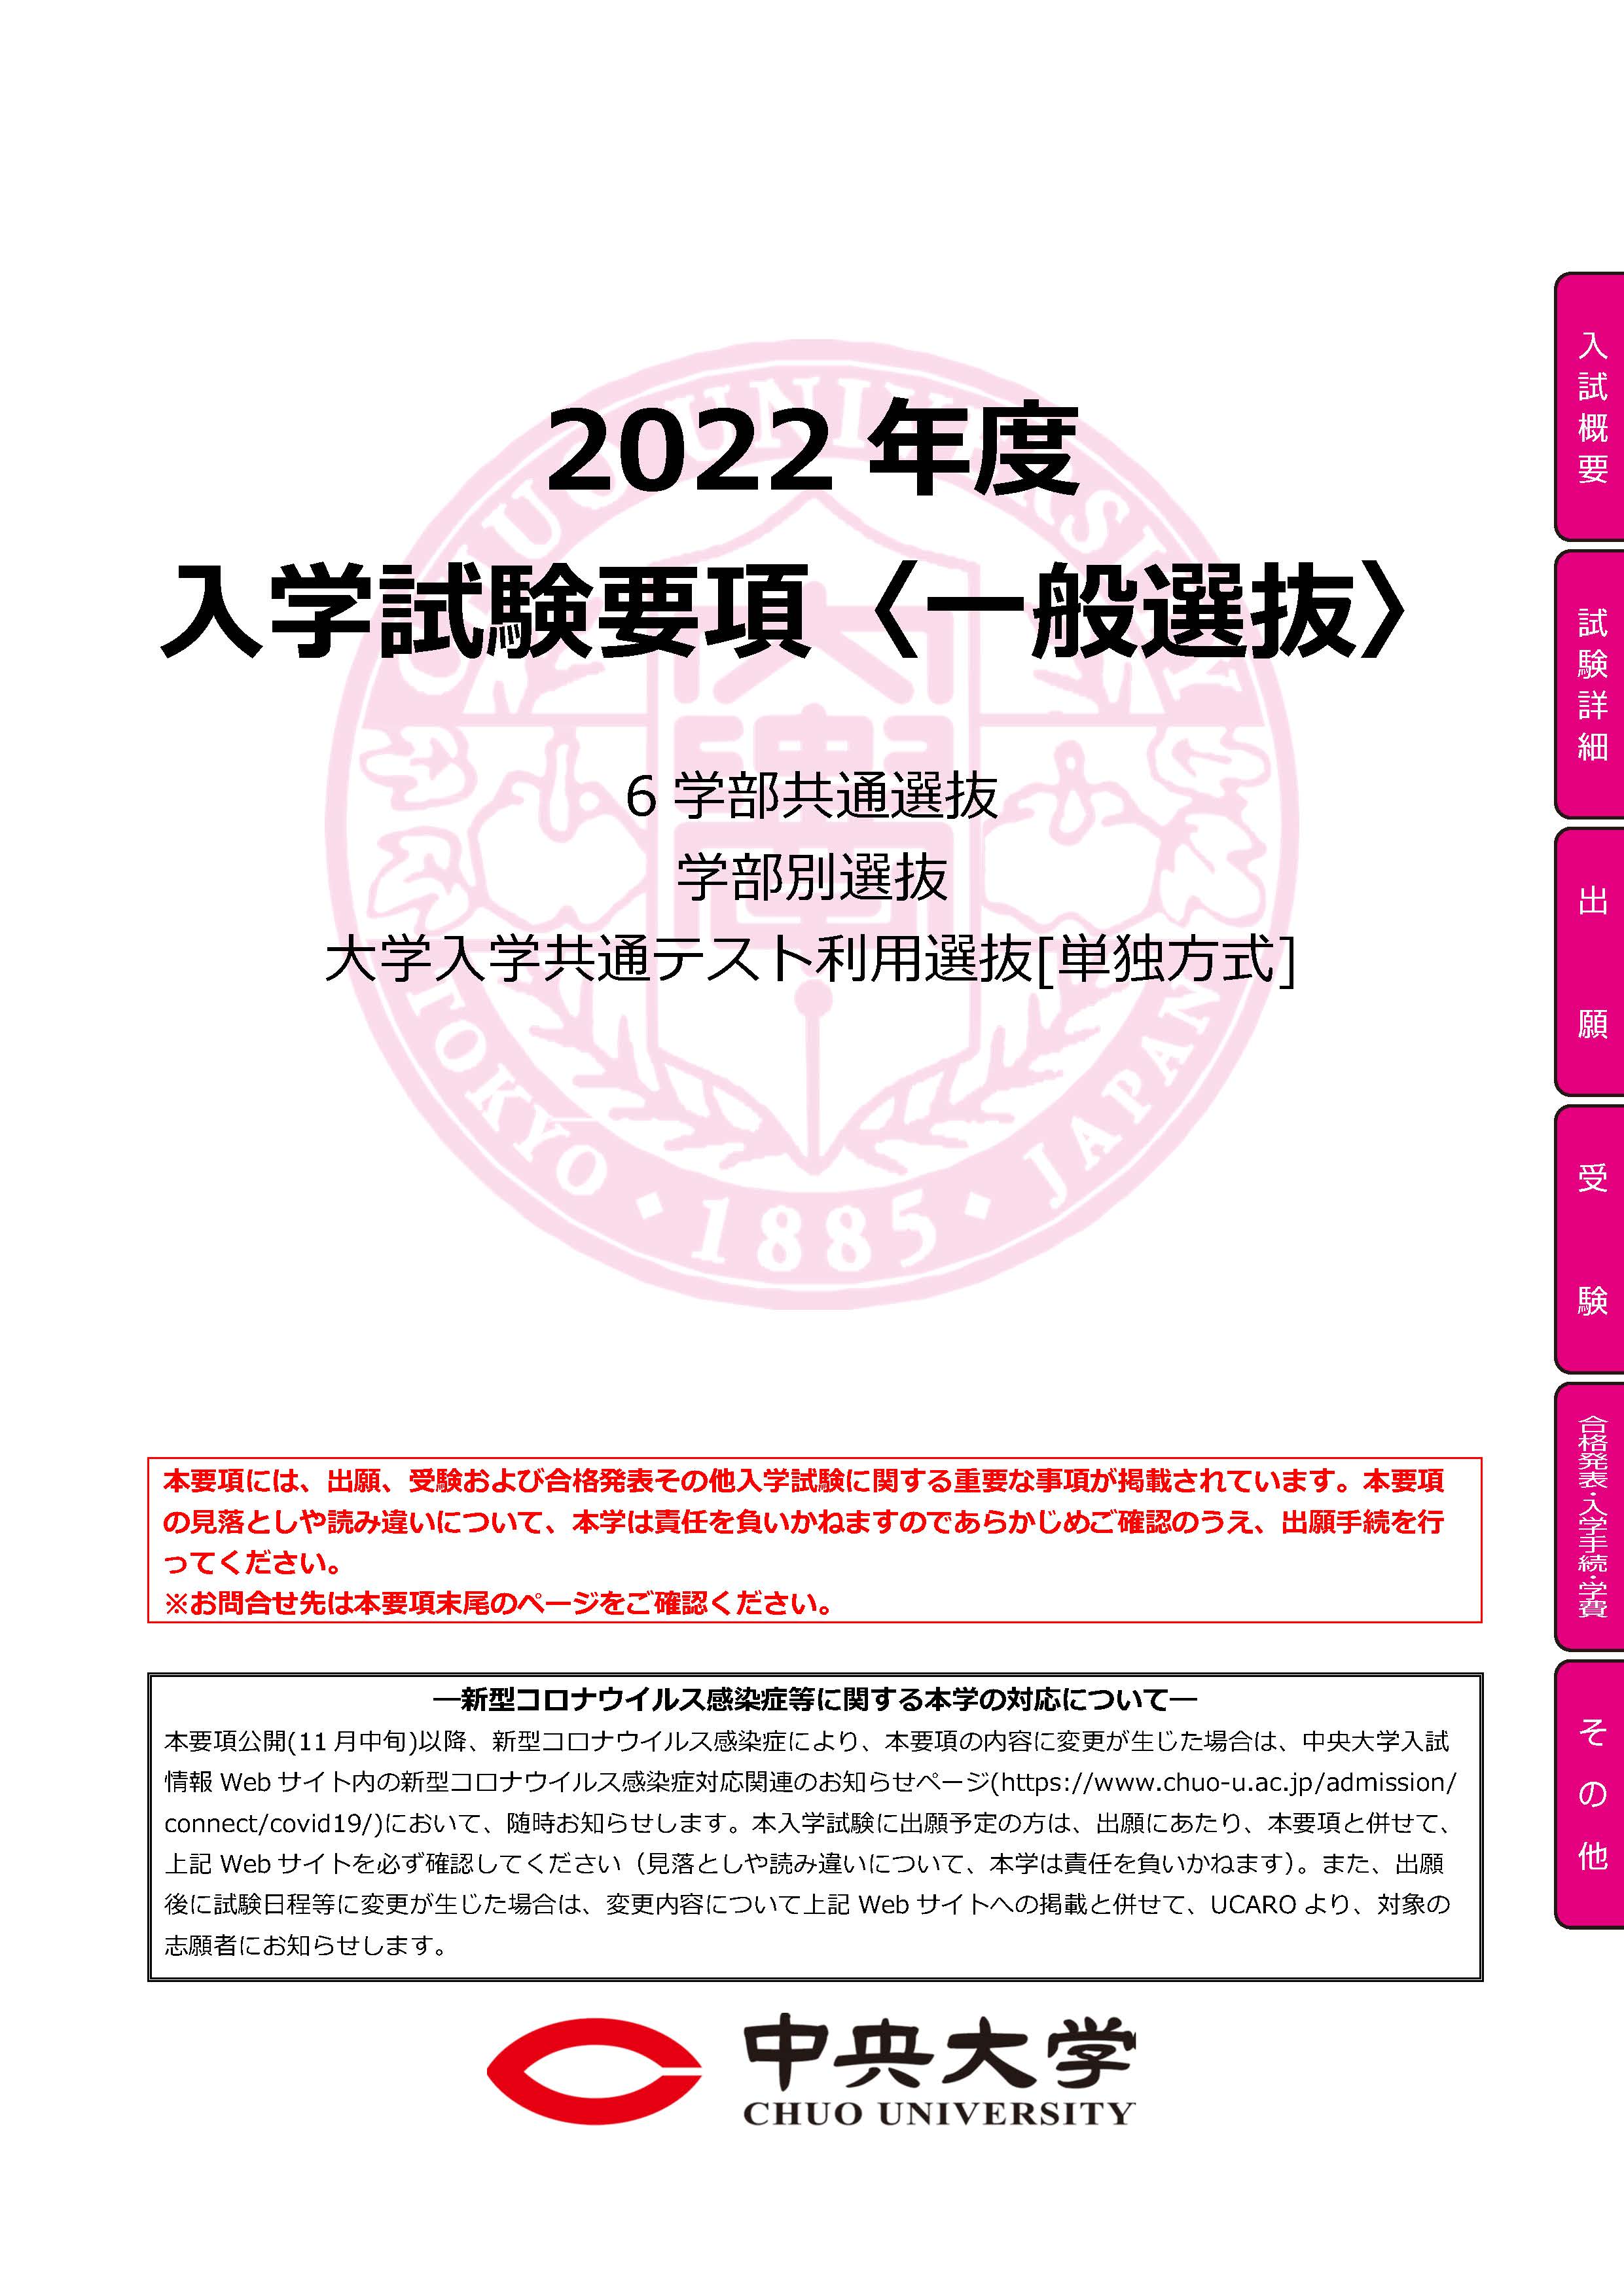 東北 大学 合格 発表 2022 高校 別